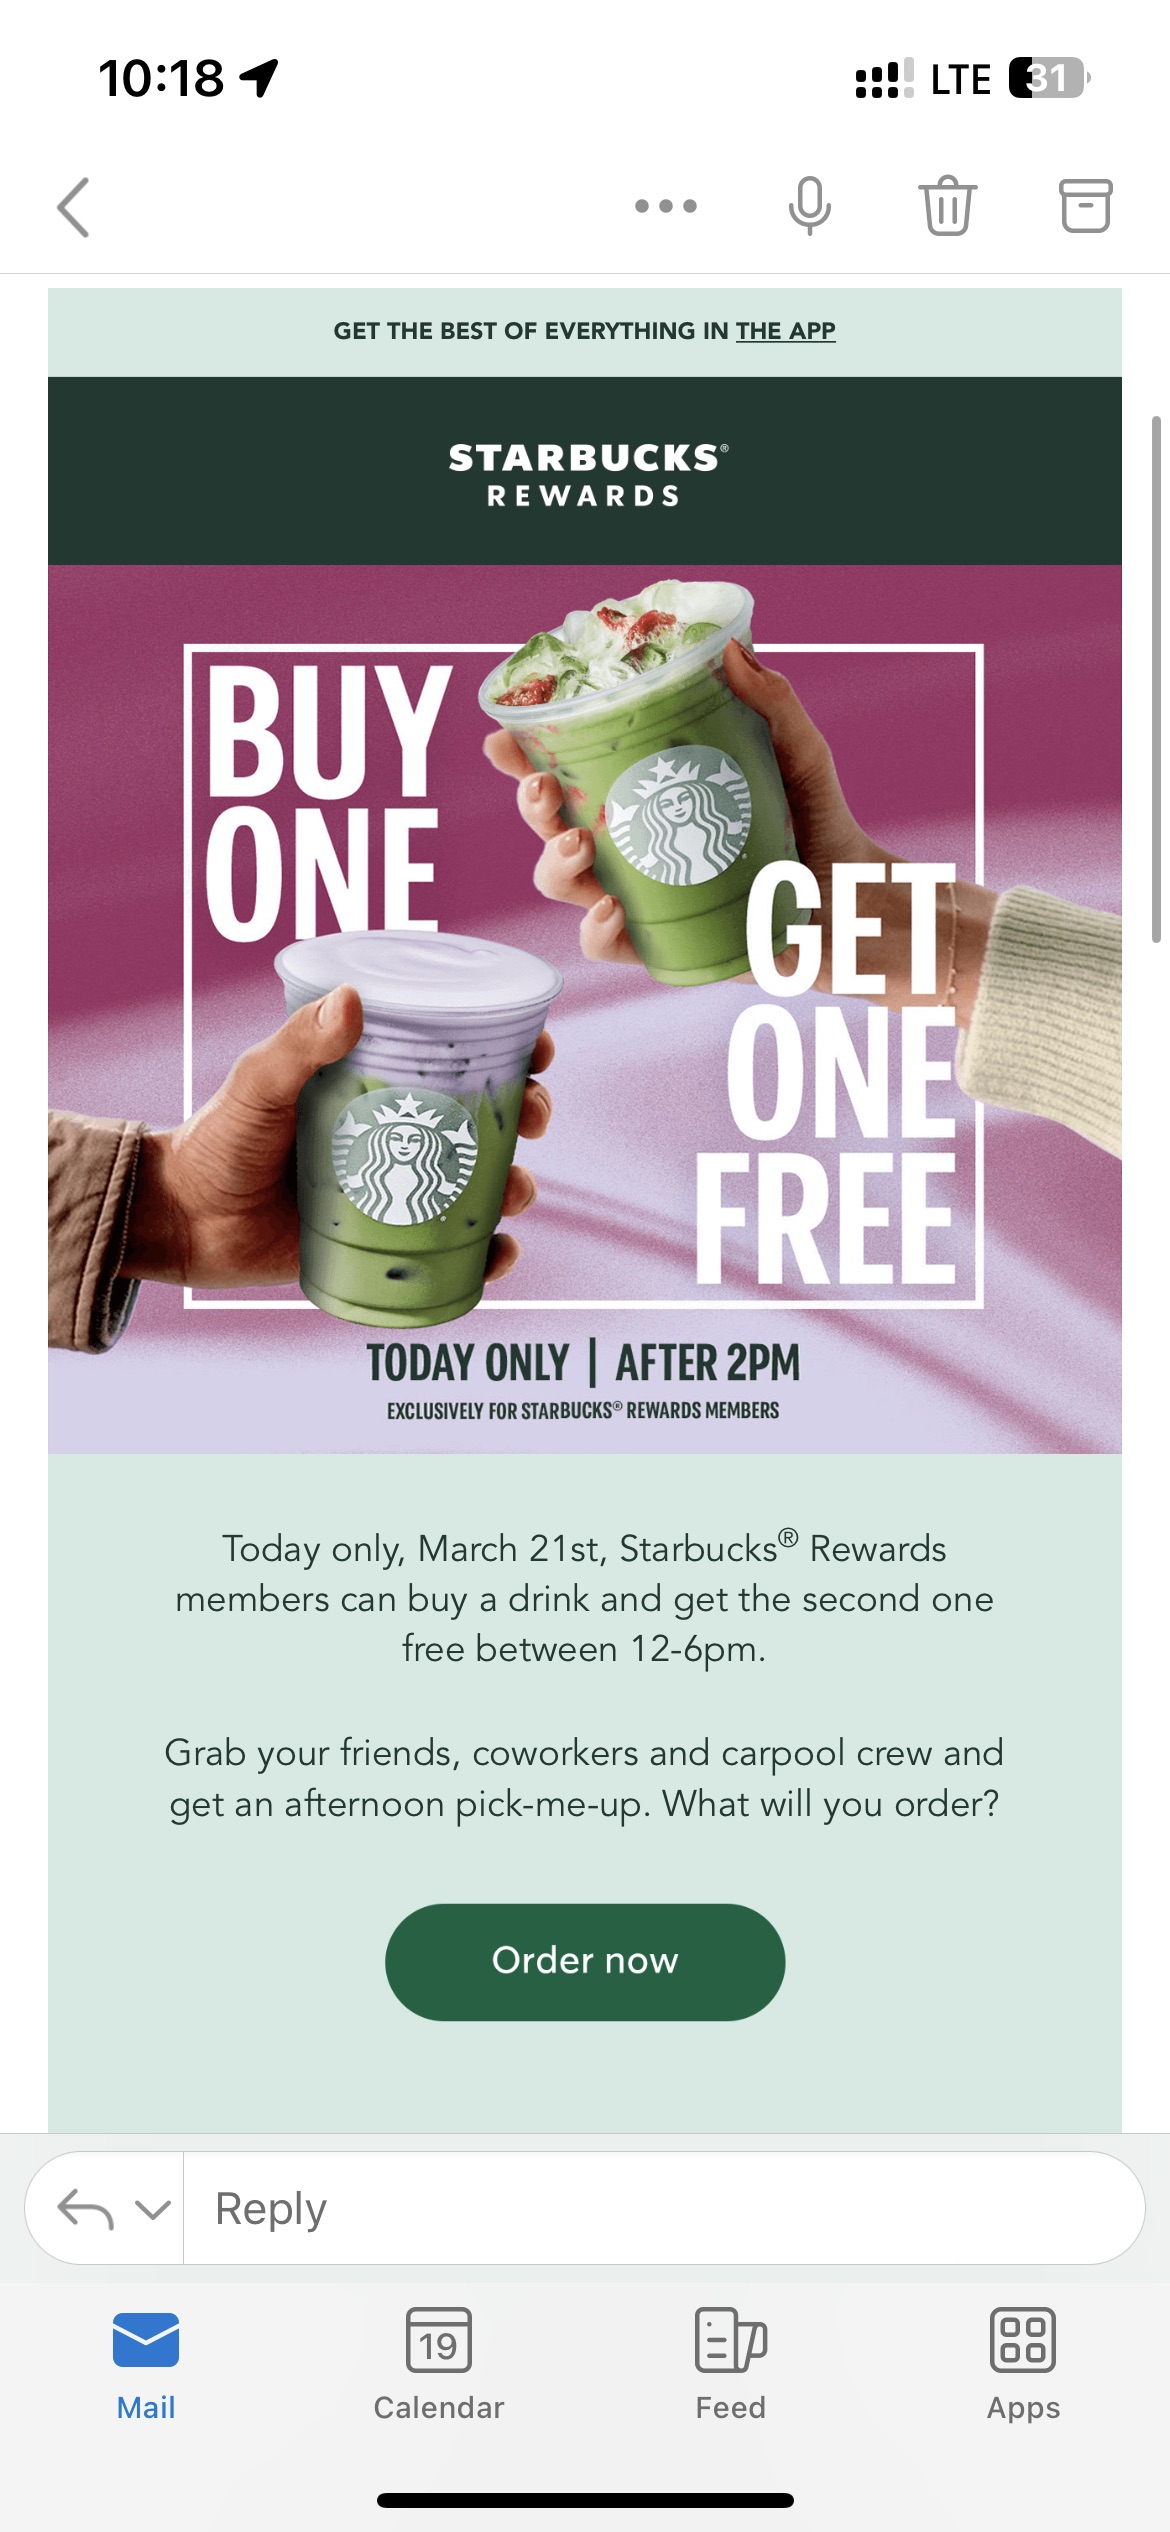 Starbucks Buy 1, get 1 FREE between 12-6pm!